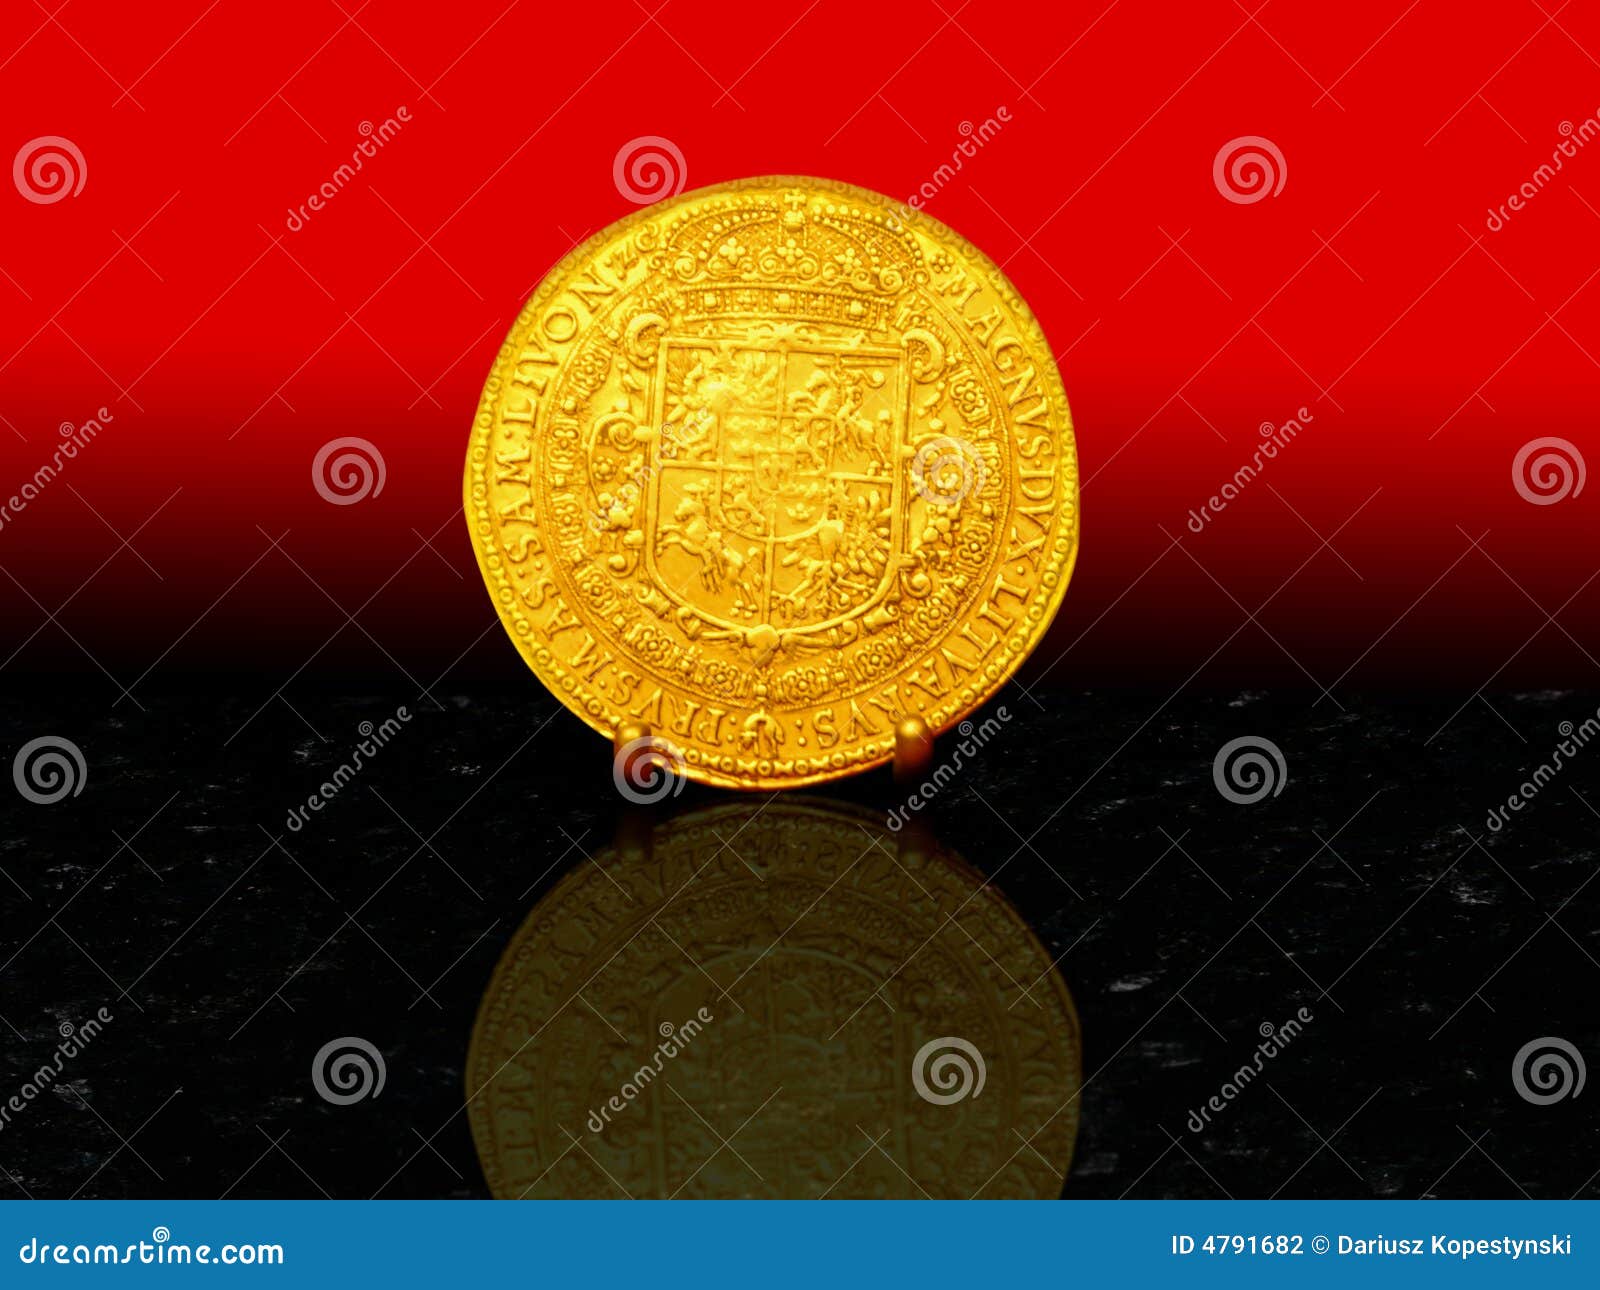 golden coin 1617